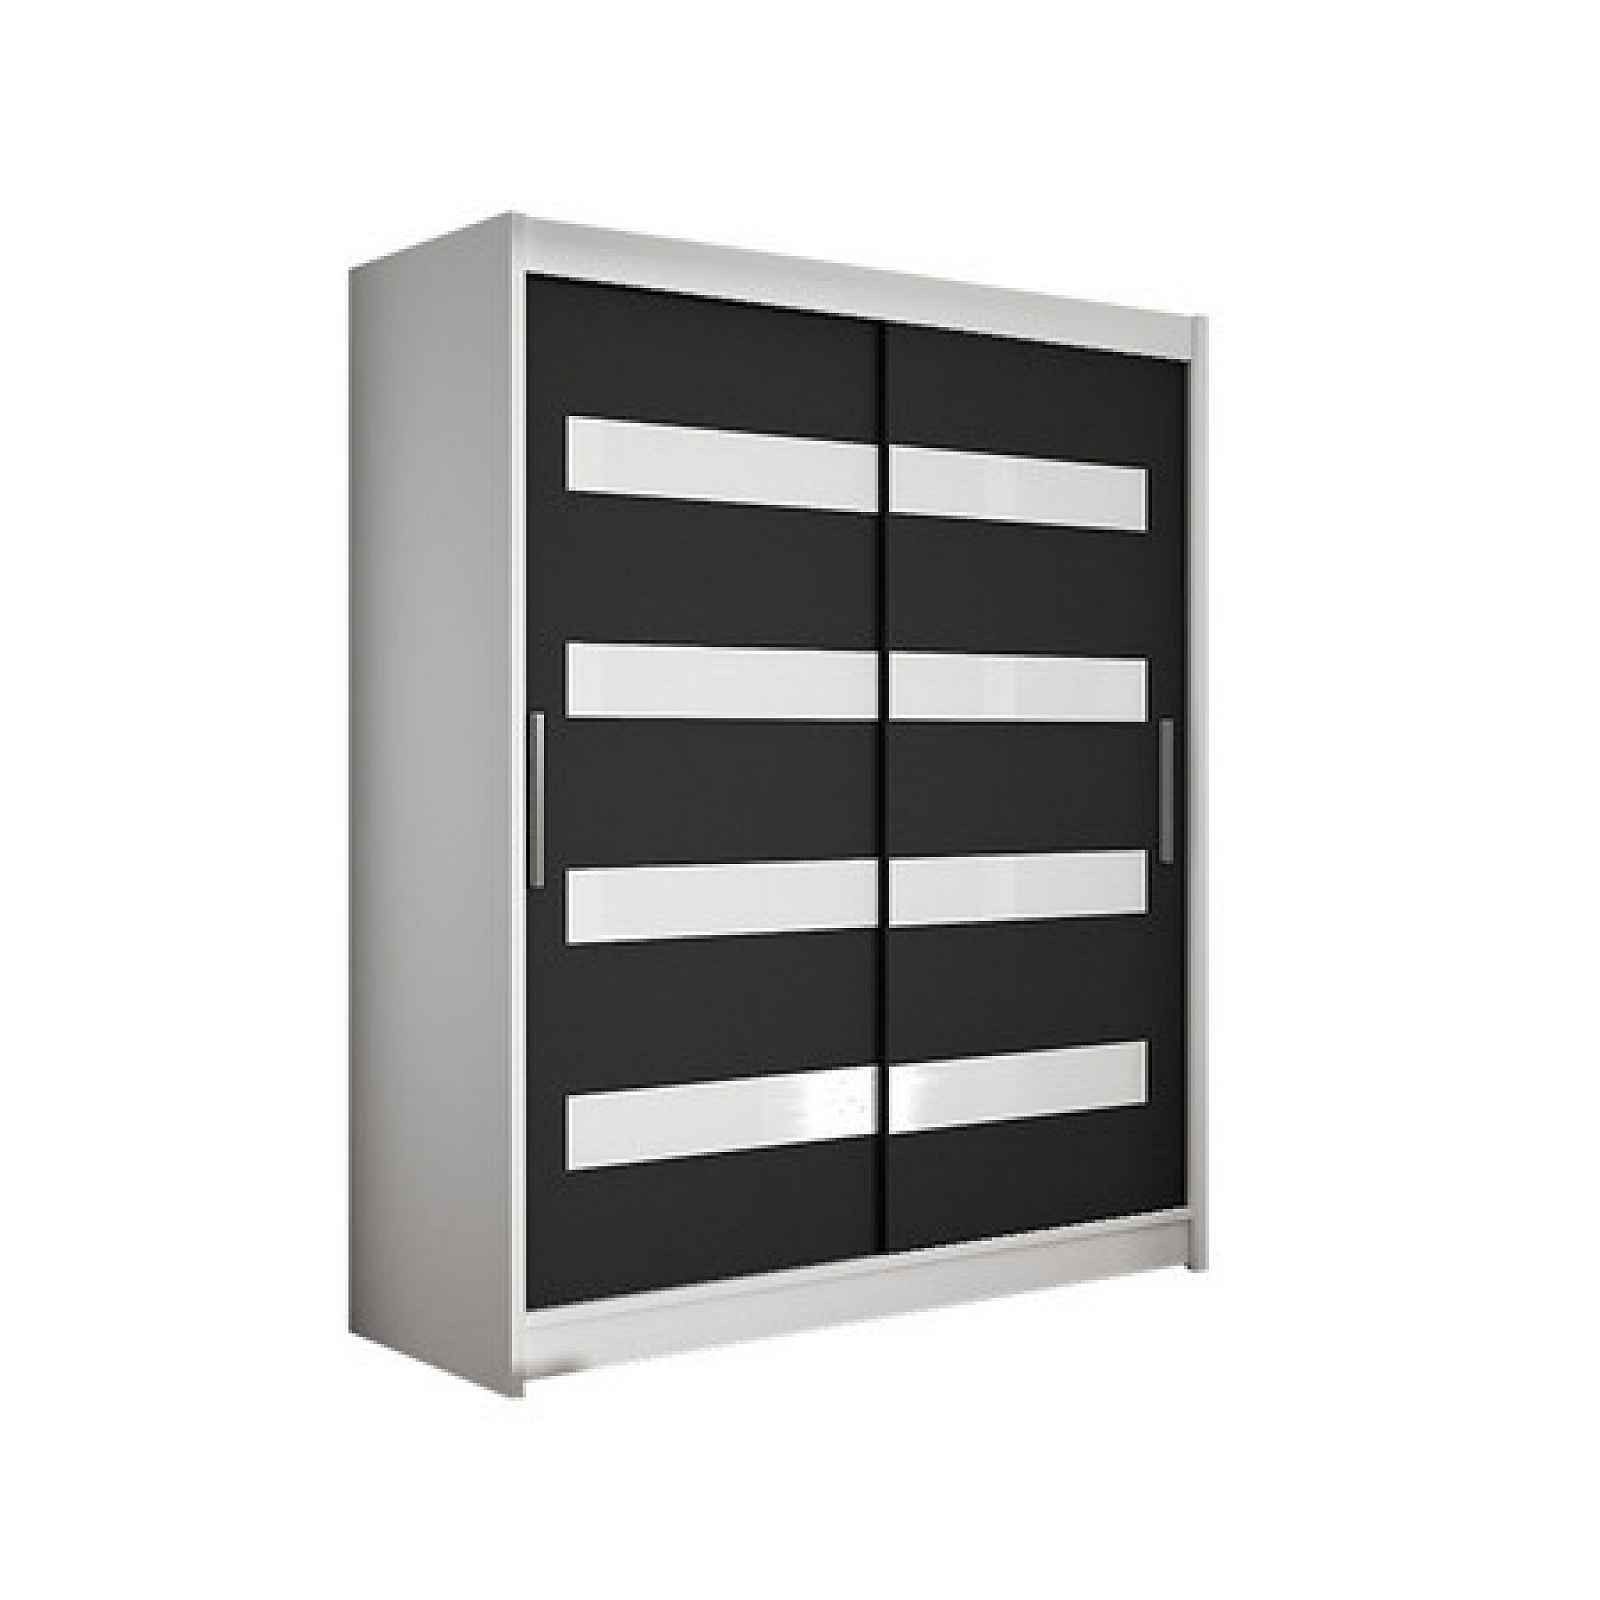 šatní skříň WESTA IV bílá/černá šířka 150 cm